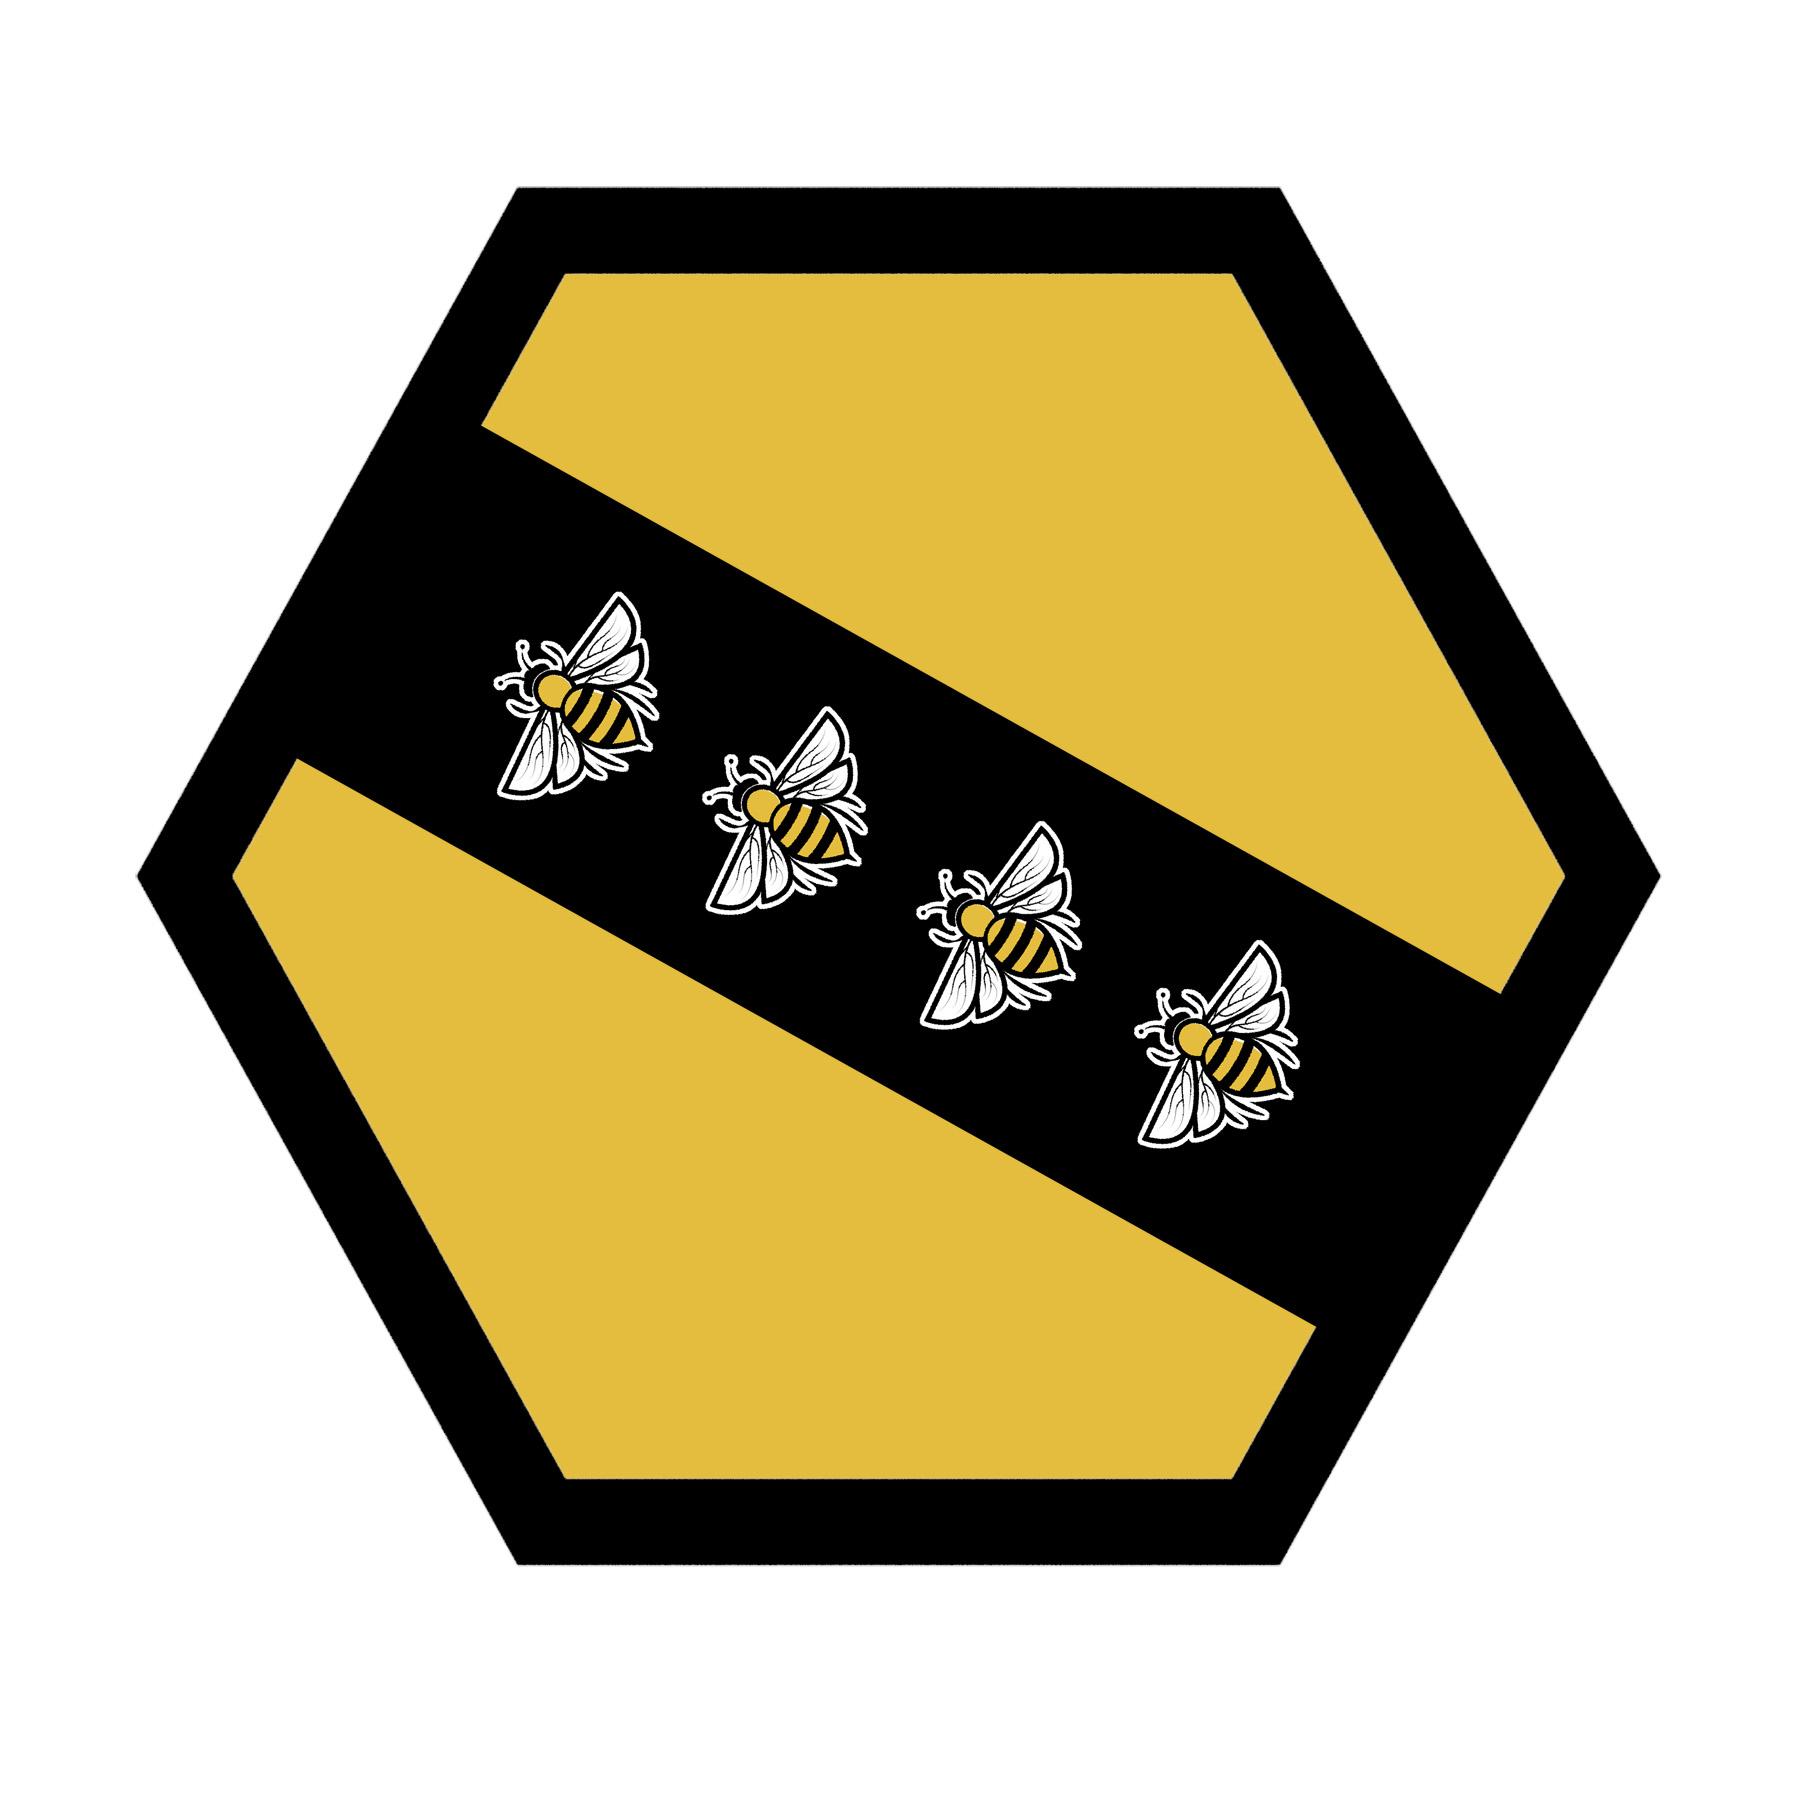 Braul's heraldry "The Golden Bees"